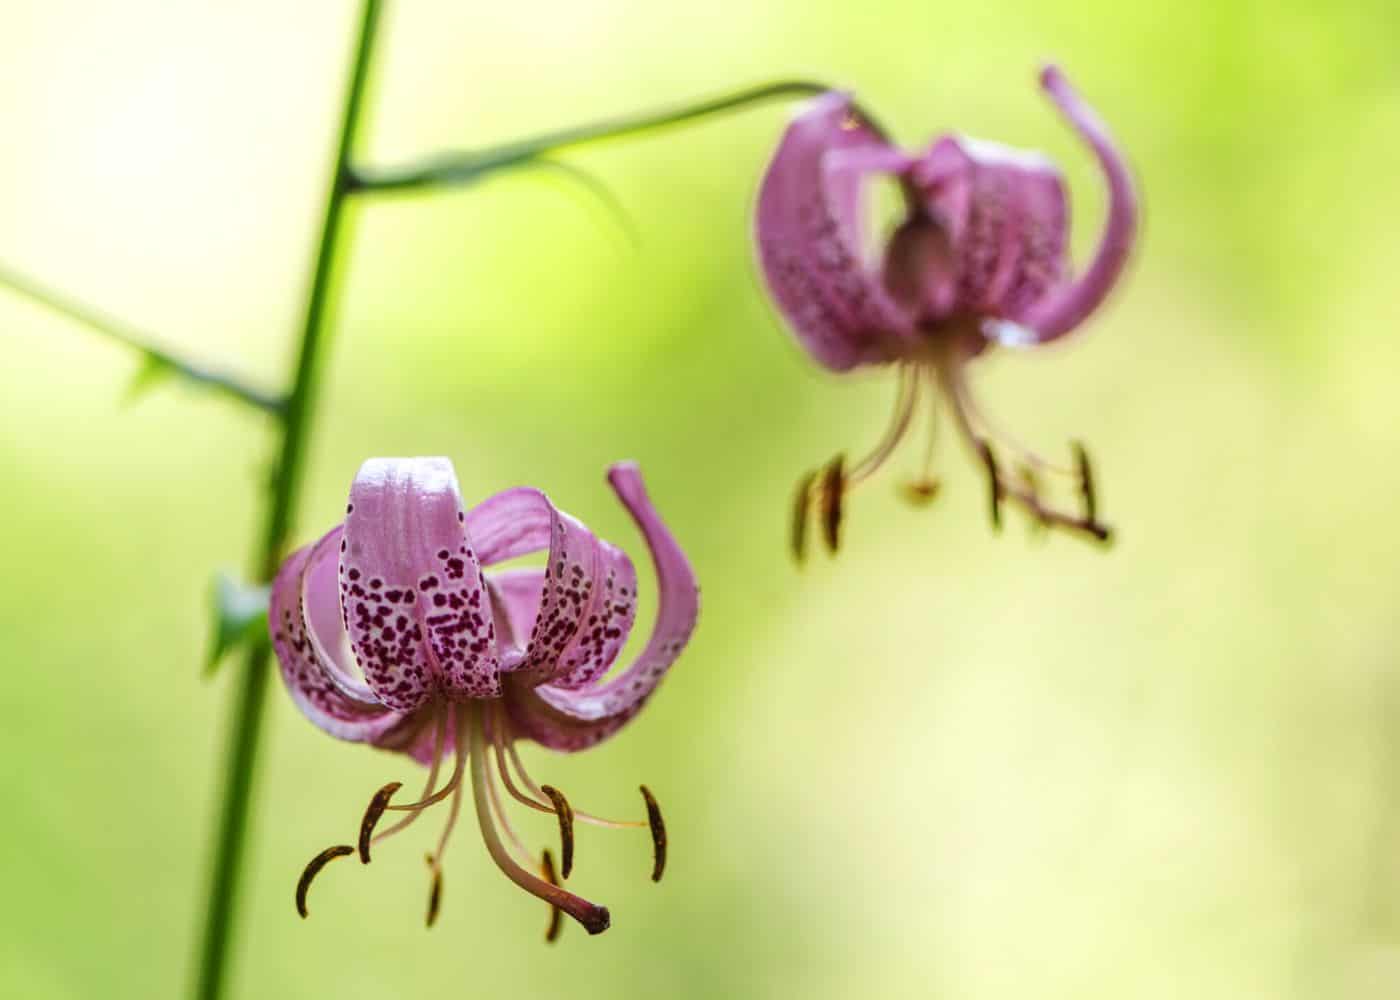 Lilium martagon - turks cap